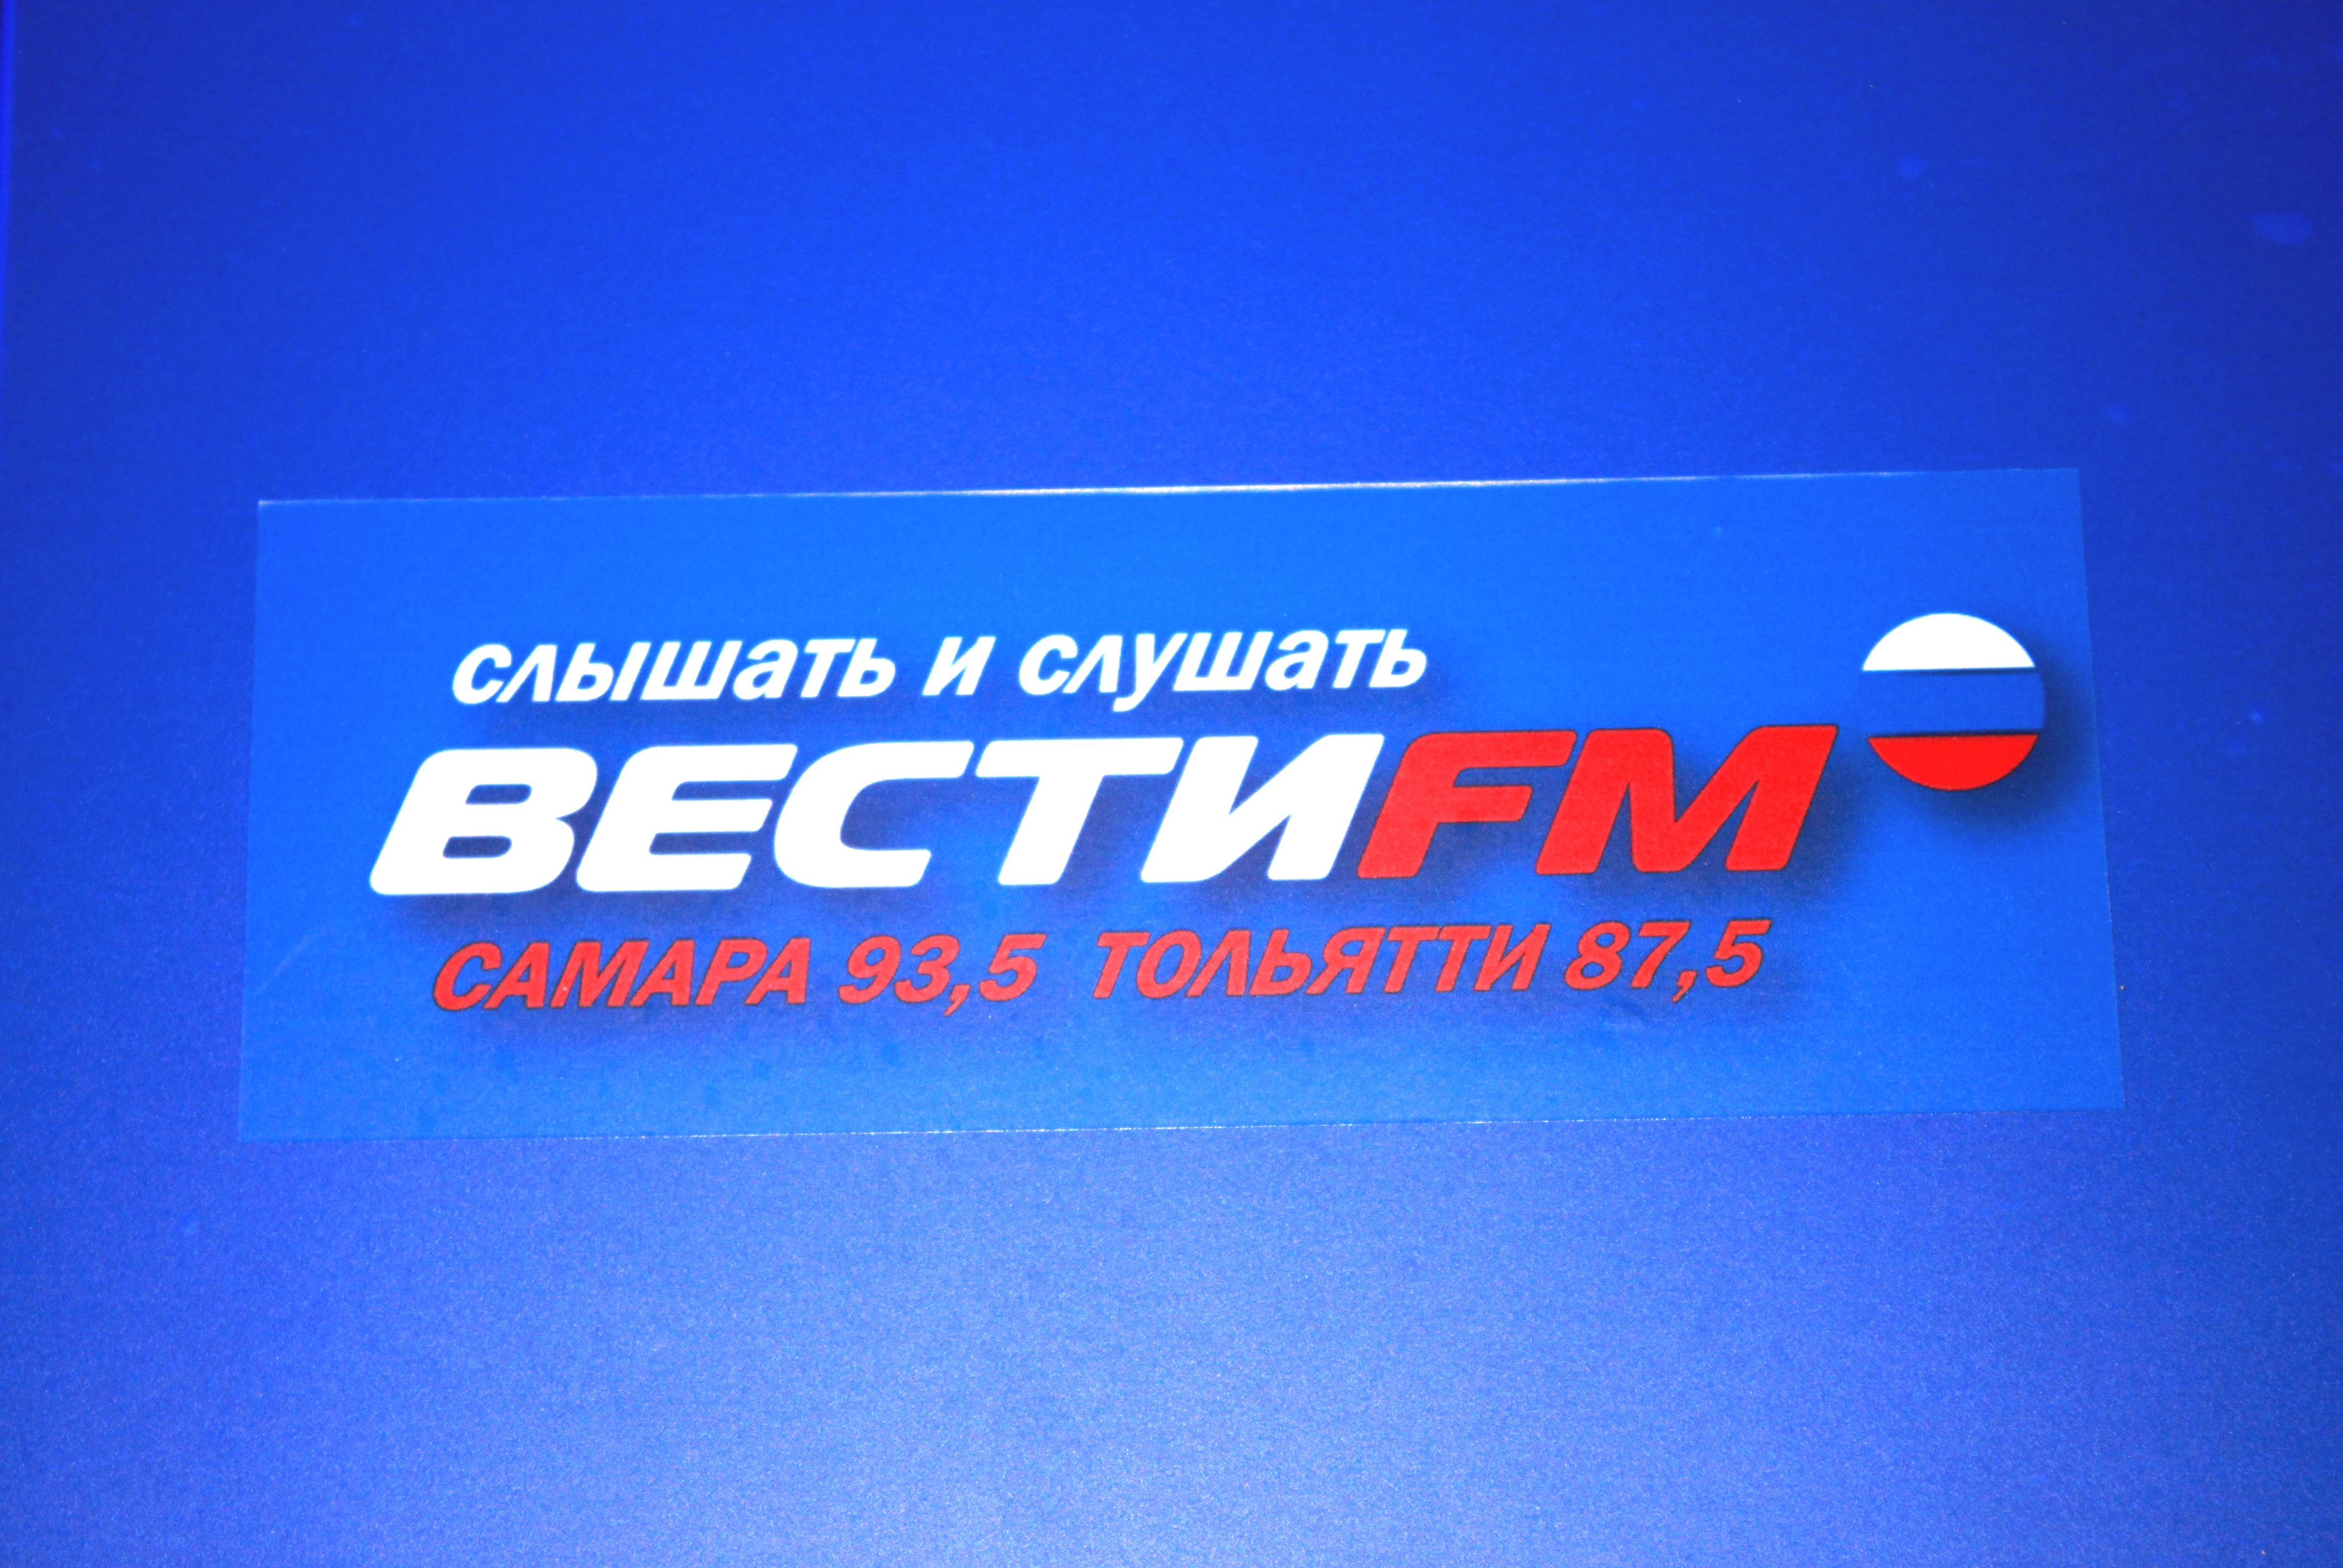 Радиопоток вести фм слушать. Вести ФМ. Вести fm логотип. Логотип радиостанции вести ФМ. Вести ФМ студия.